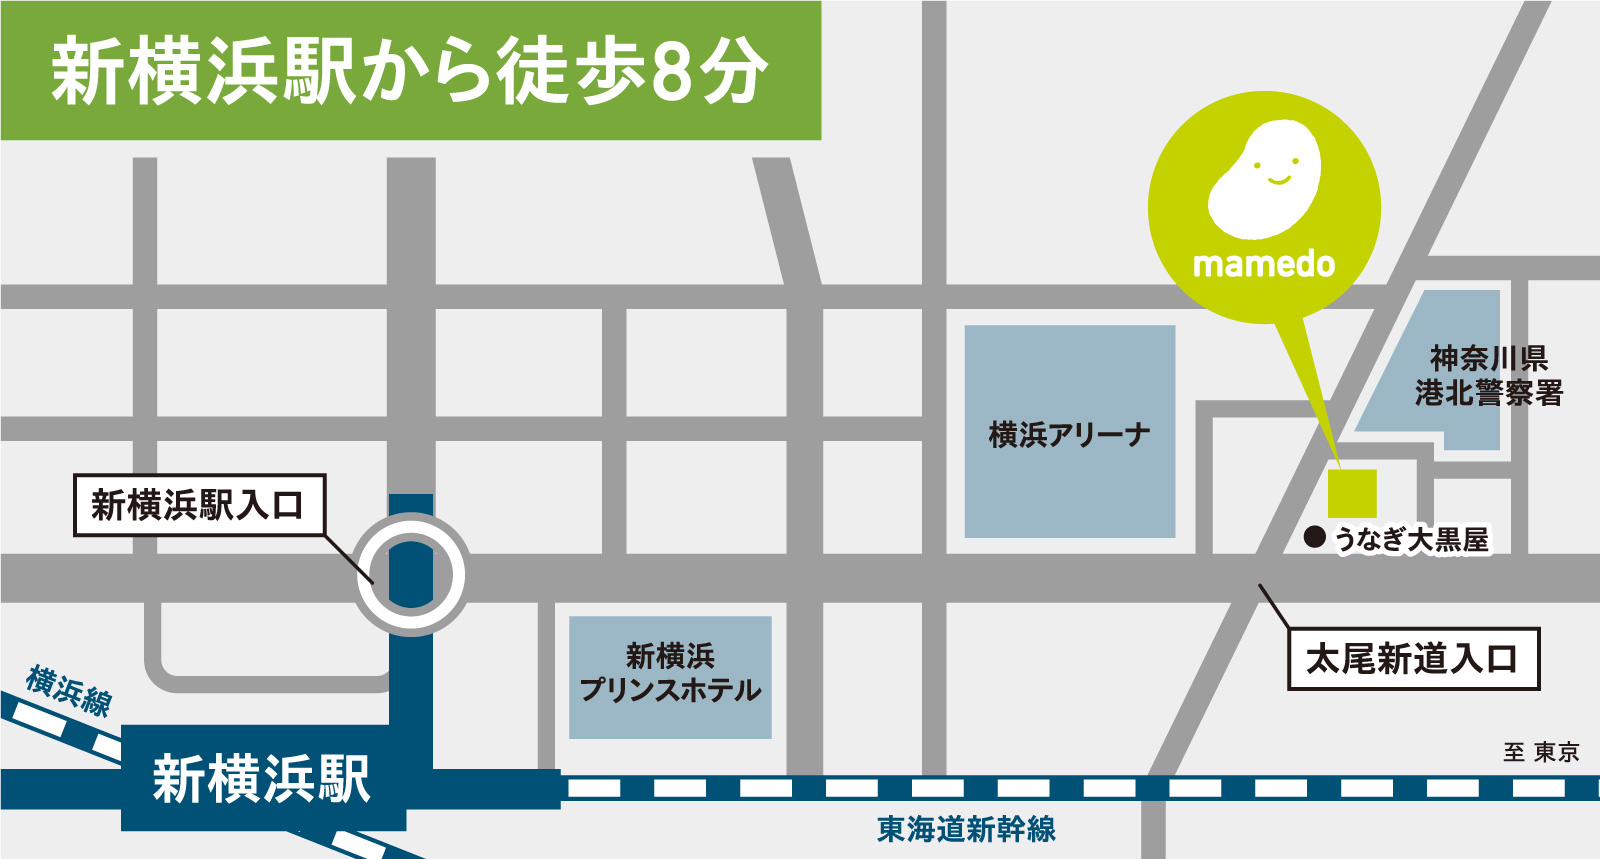 新横浜駅からまめど歯科までの地図